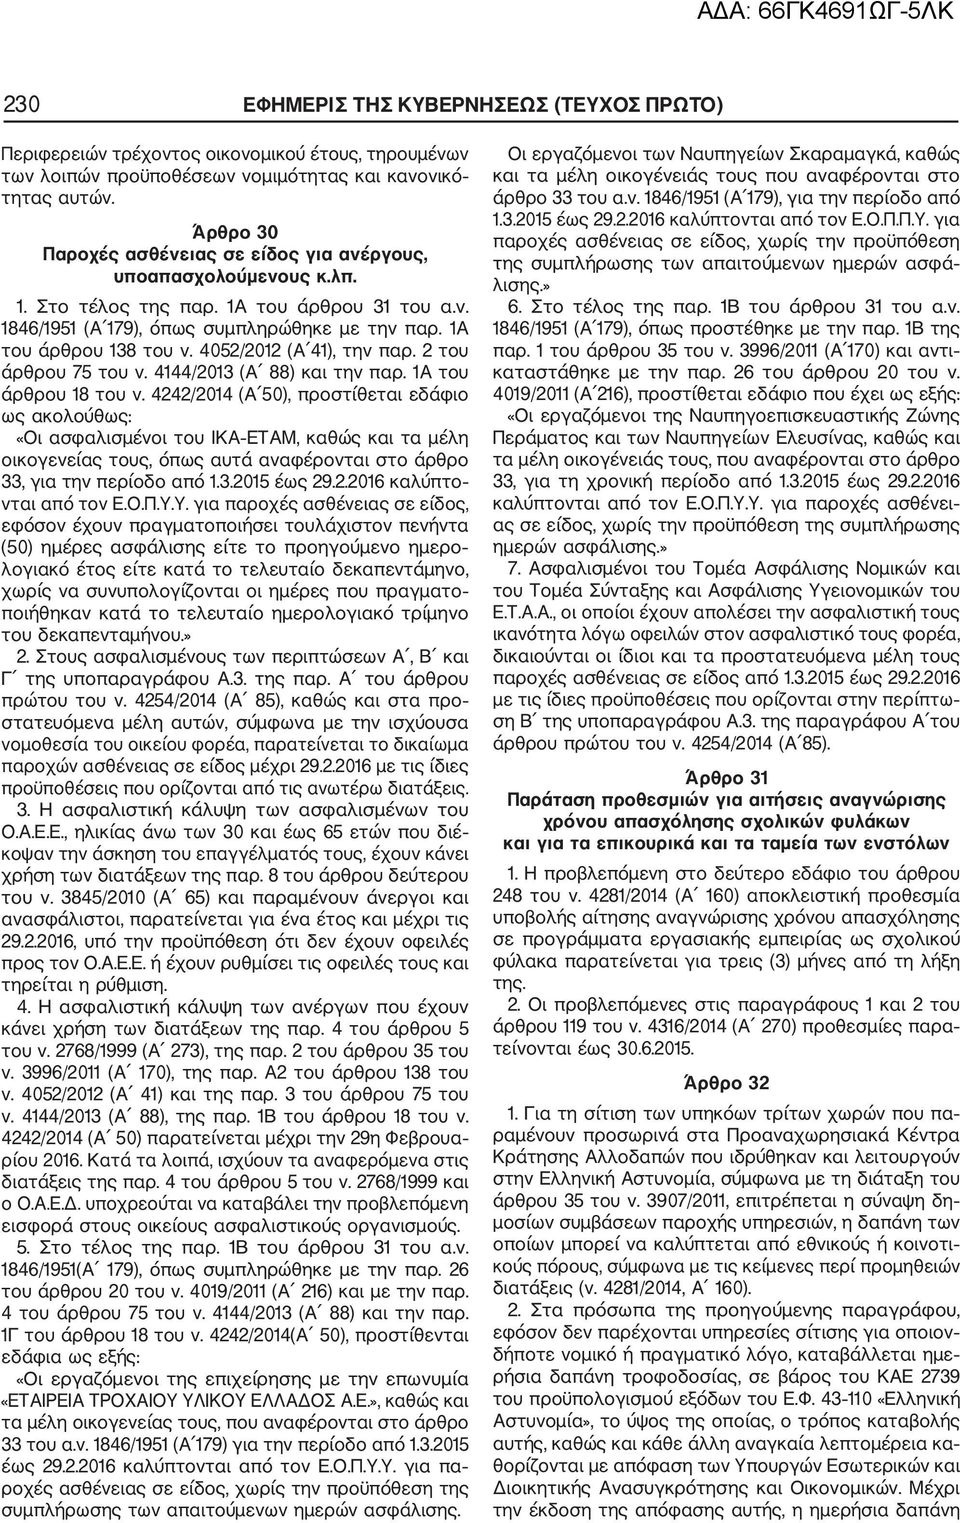 4052/2012 (Α 41), την παρ. 2 του άρθρου 75 του ν. 4144/2013 (Α 88) και την παρ. 1Α του άρθρου 18 του ν.